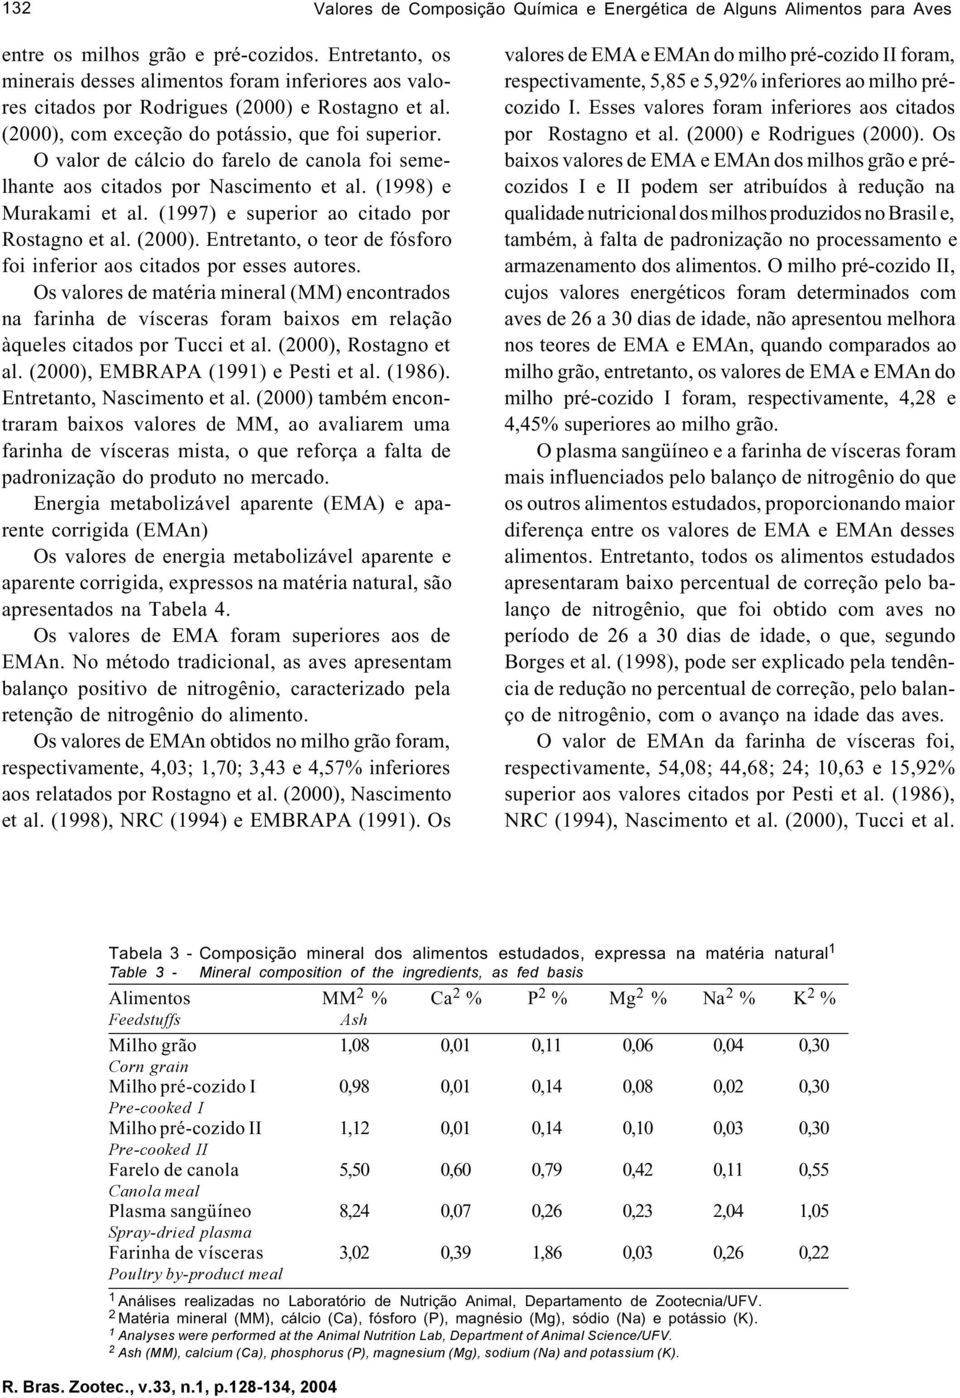 O valor de cálcio do farelo de canola foi semelhante aos citados por Nascimento et al. (1998) e Murakami et al. (1997) e superior ao citado por Rostagno et al. (2000).